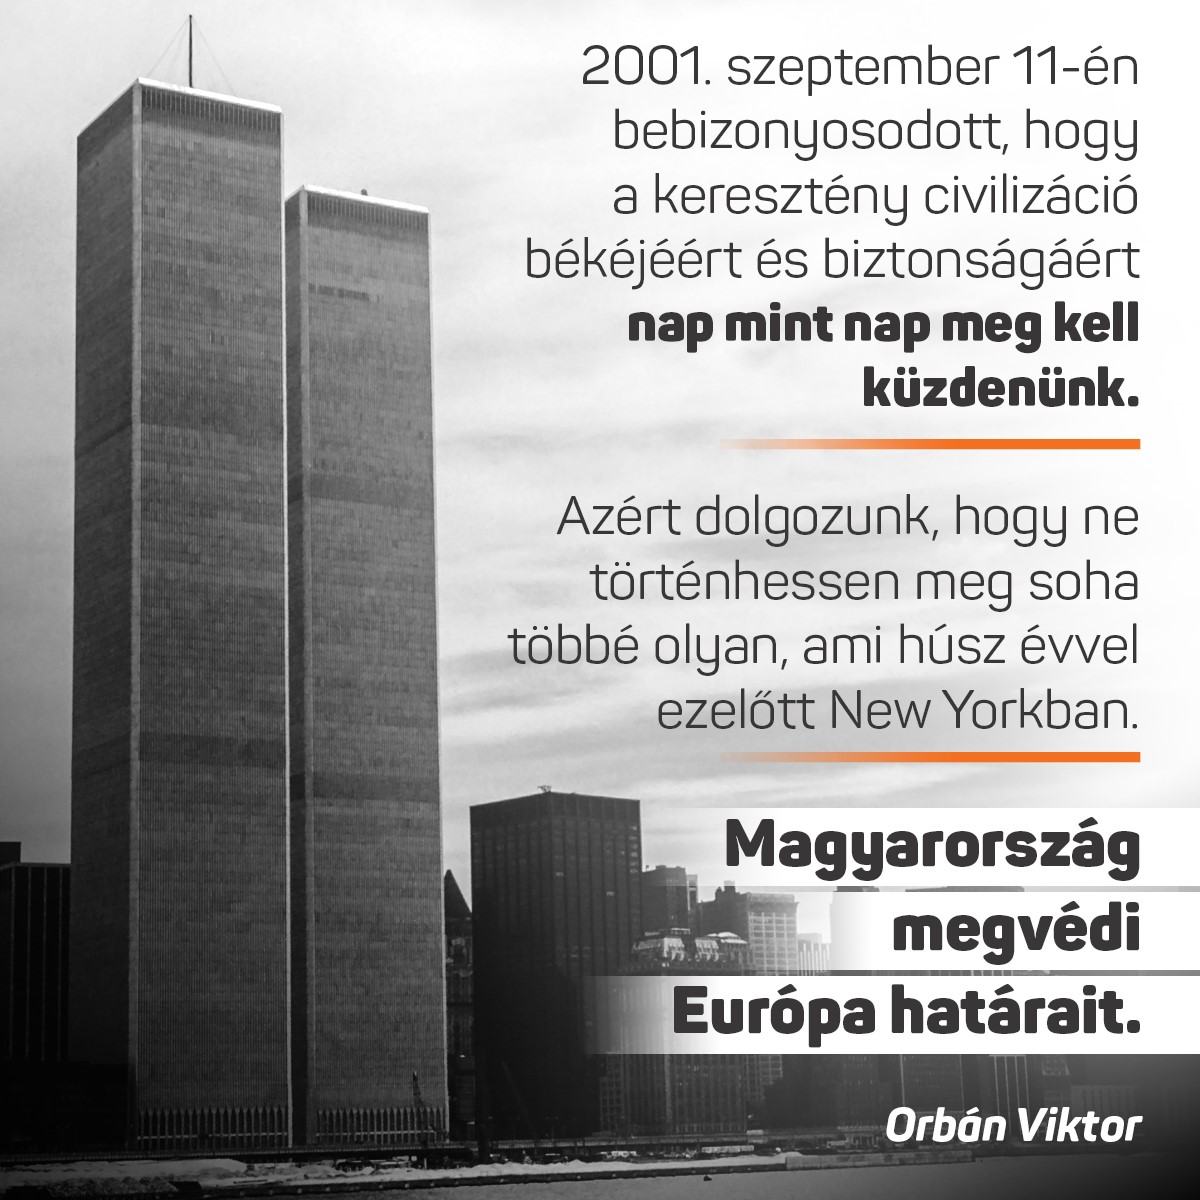 2001. szeptember 11-én bebizonyosodott, hogy a keresztény civilizáció békéjéért és biztonságáért nap mint nap meg kell küzdenünk.  Azért dolgozunk, hogy ne történhessen meg soha többé olyan, ami húsz évvel ezelőtt New Yorkban. Magyarország megvédi Európa határait!